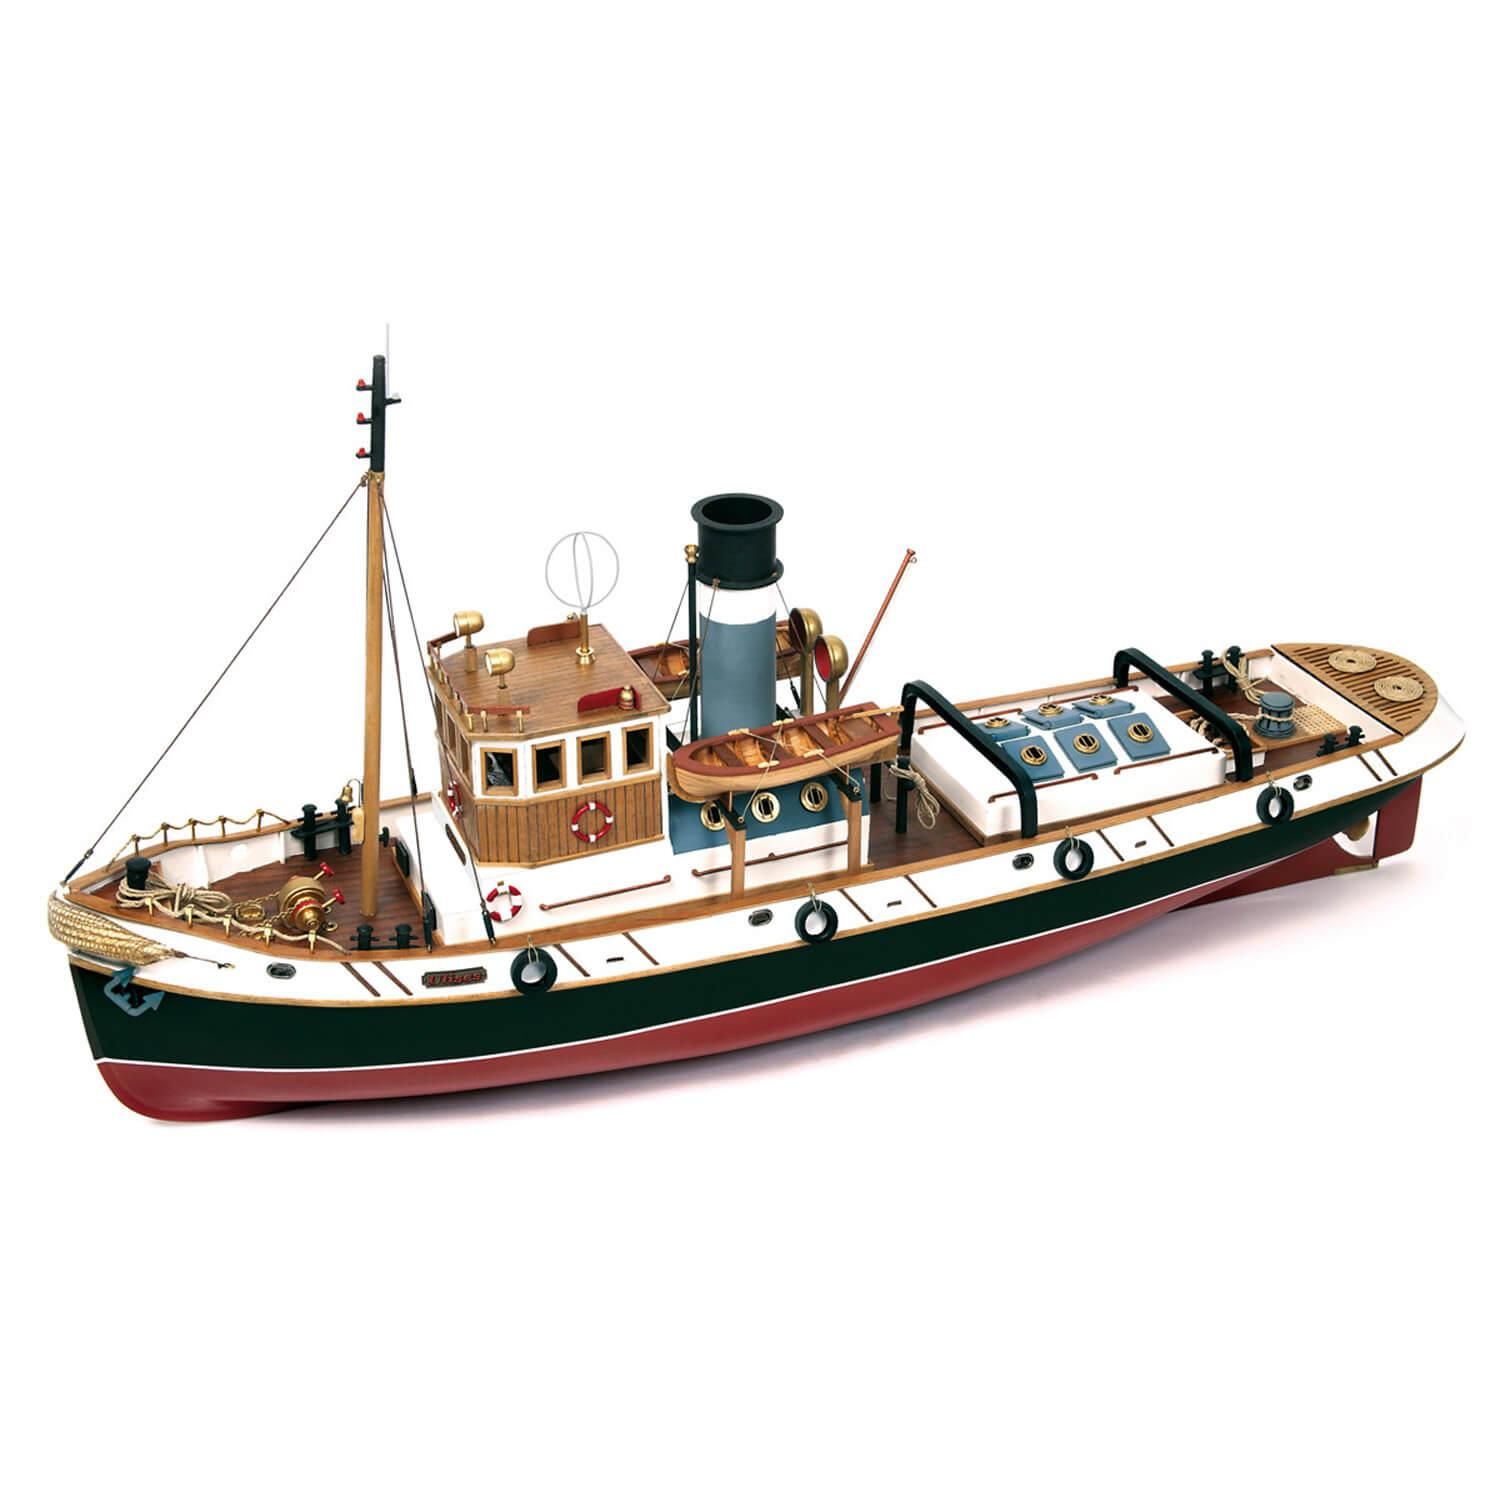 Maquette de bateau en bois : Endeavour - Jeux et jouets OCCRE